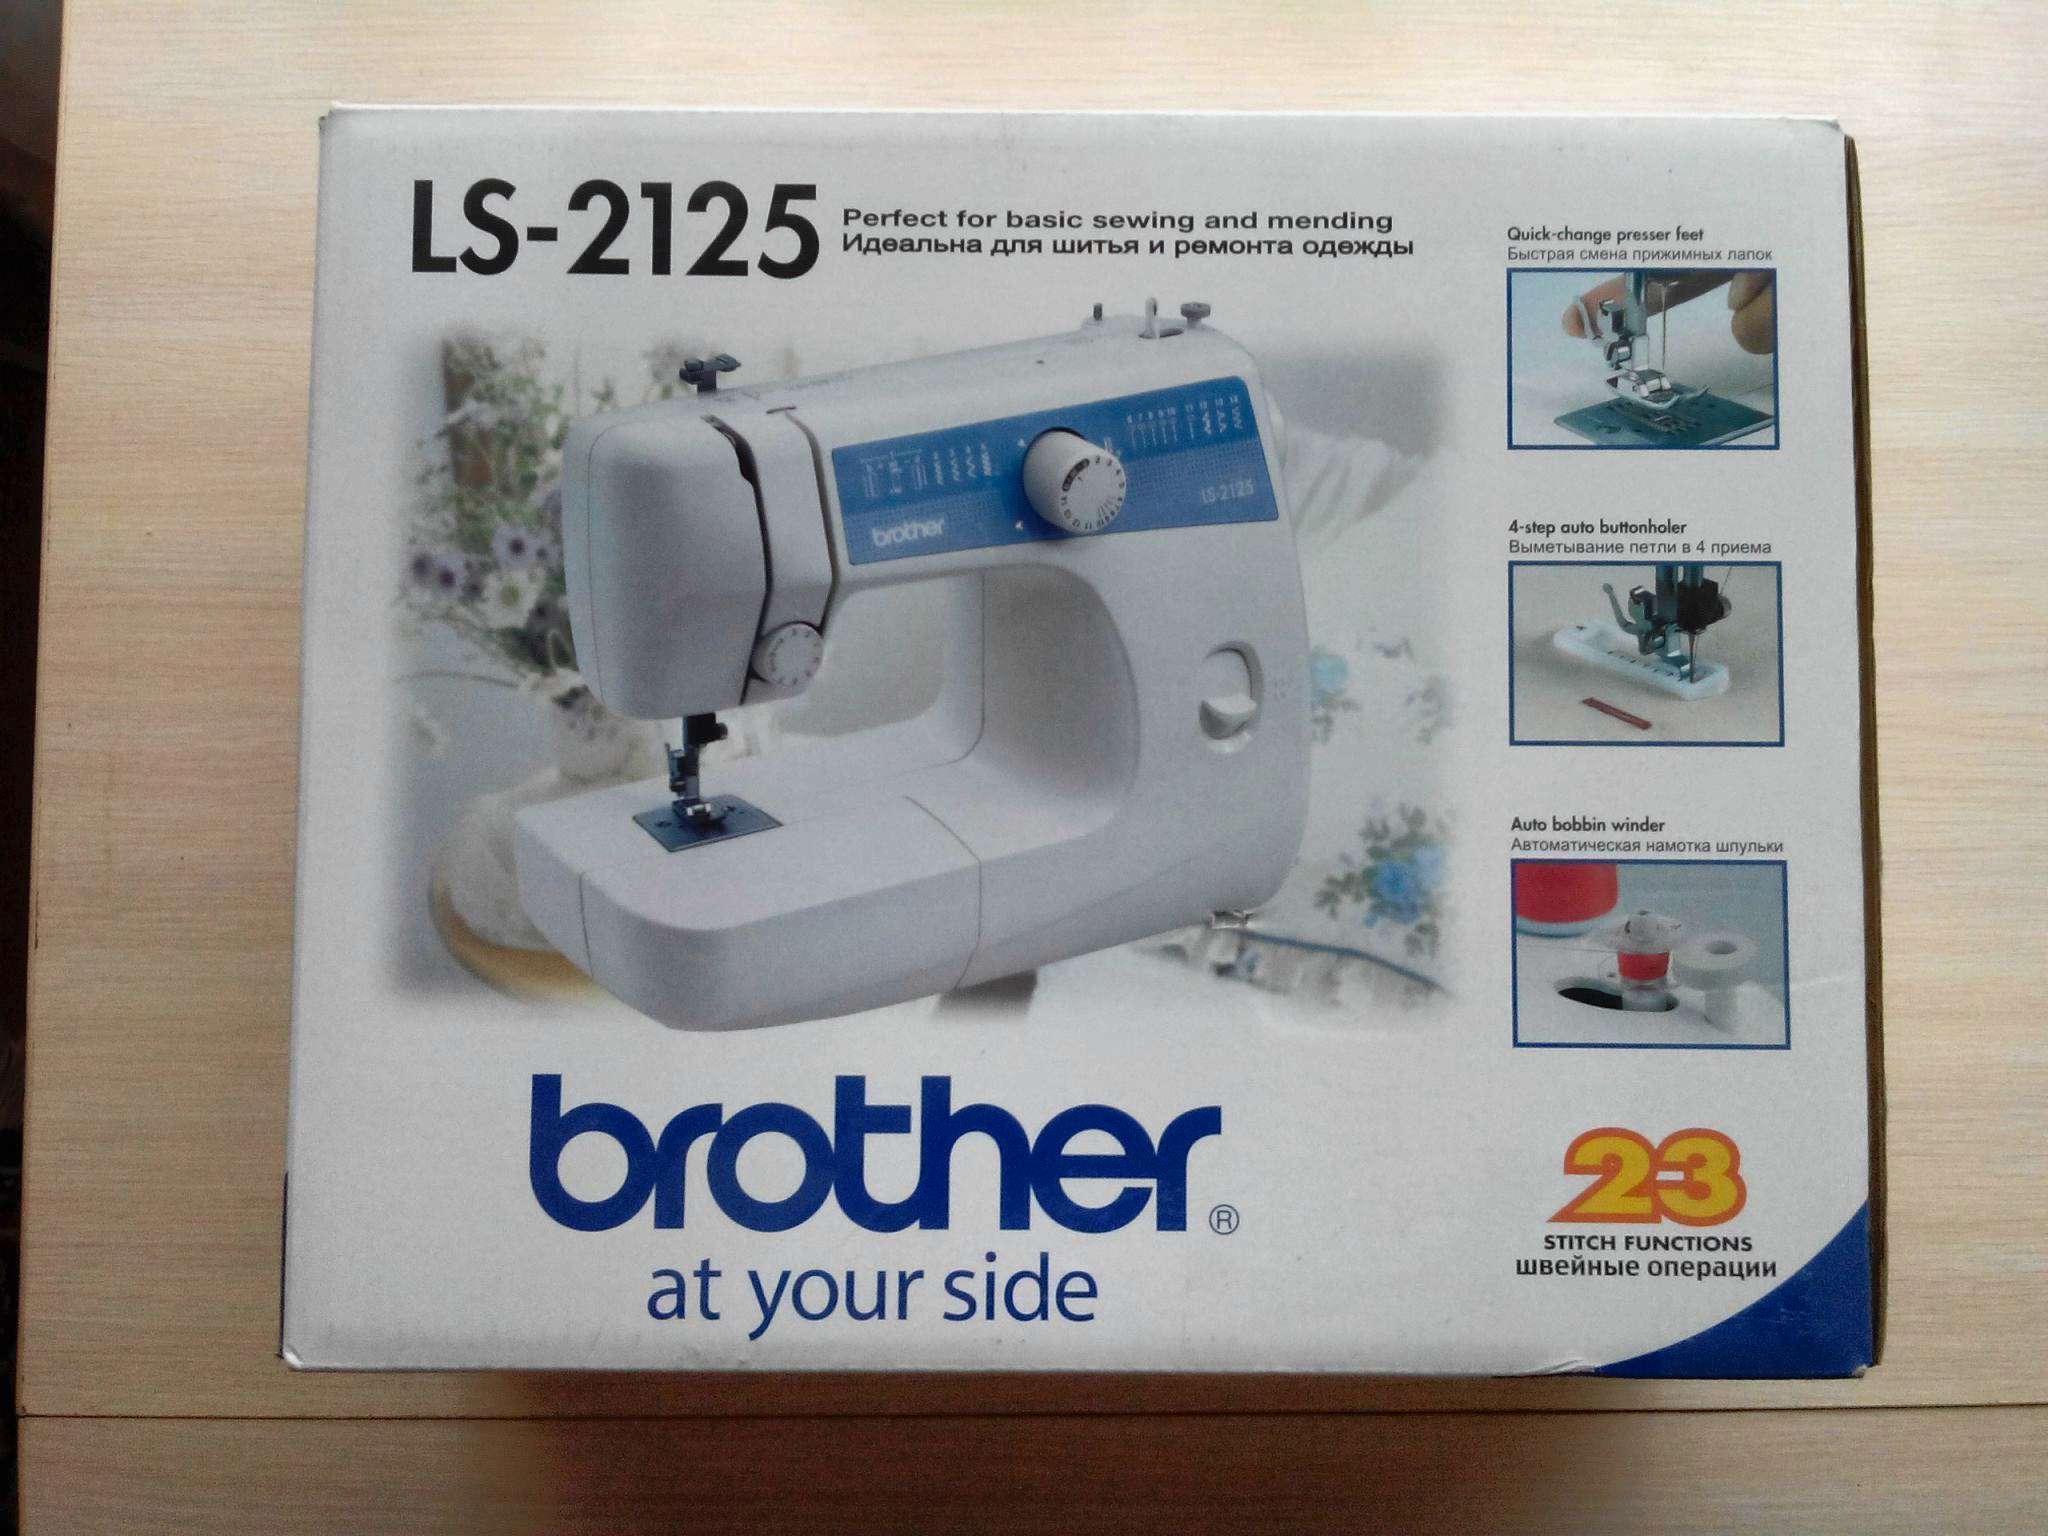 Машинка brother ls 2125. Швейная машинка LS-2125. LS 2125 brother швейная. Швейная машина Бразер лс 2125.